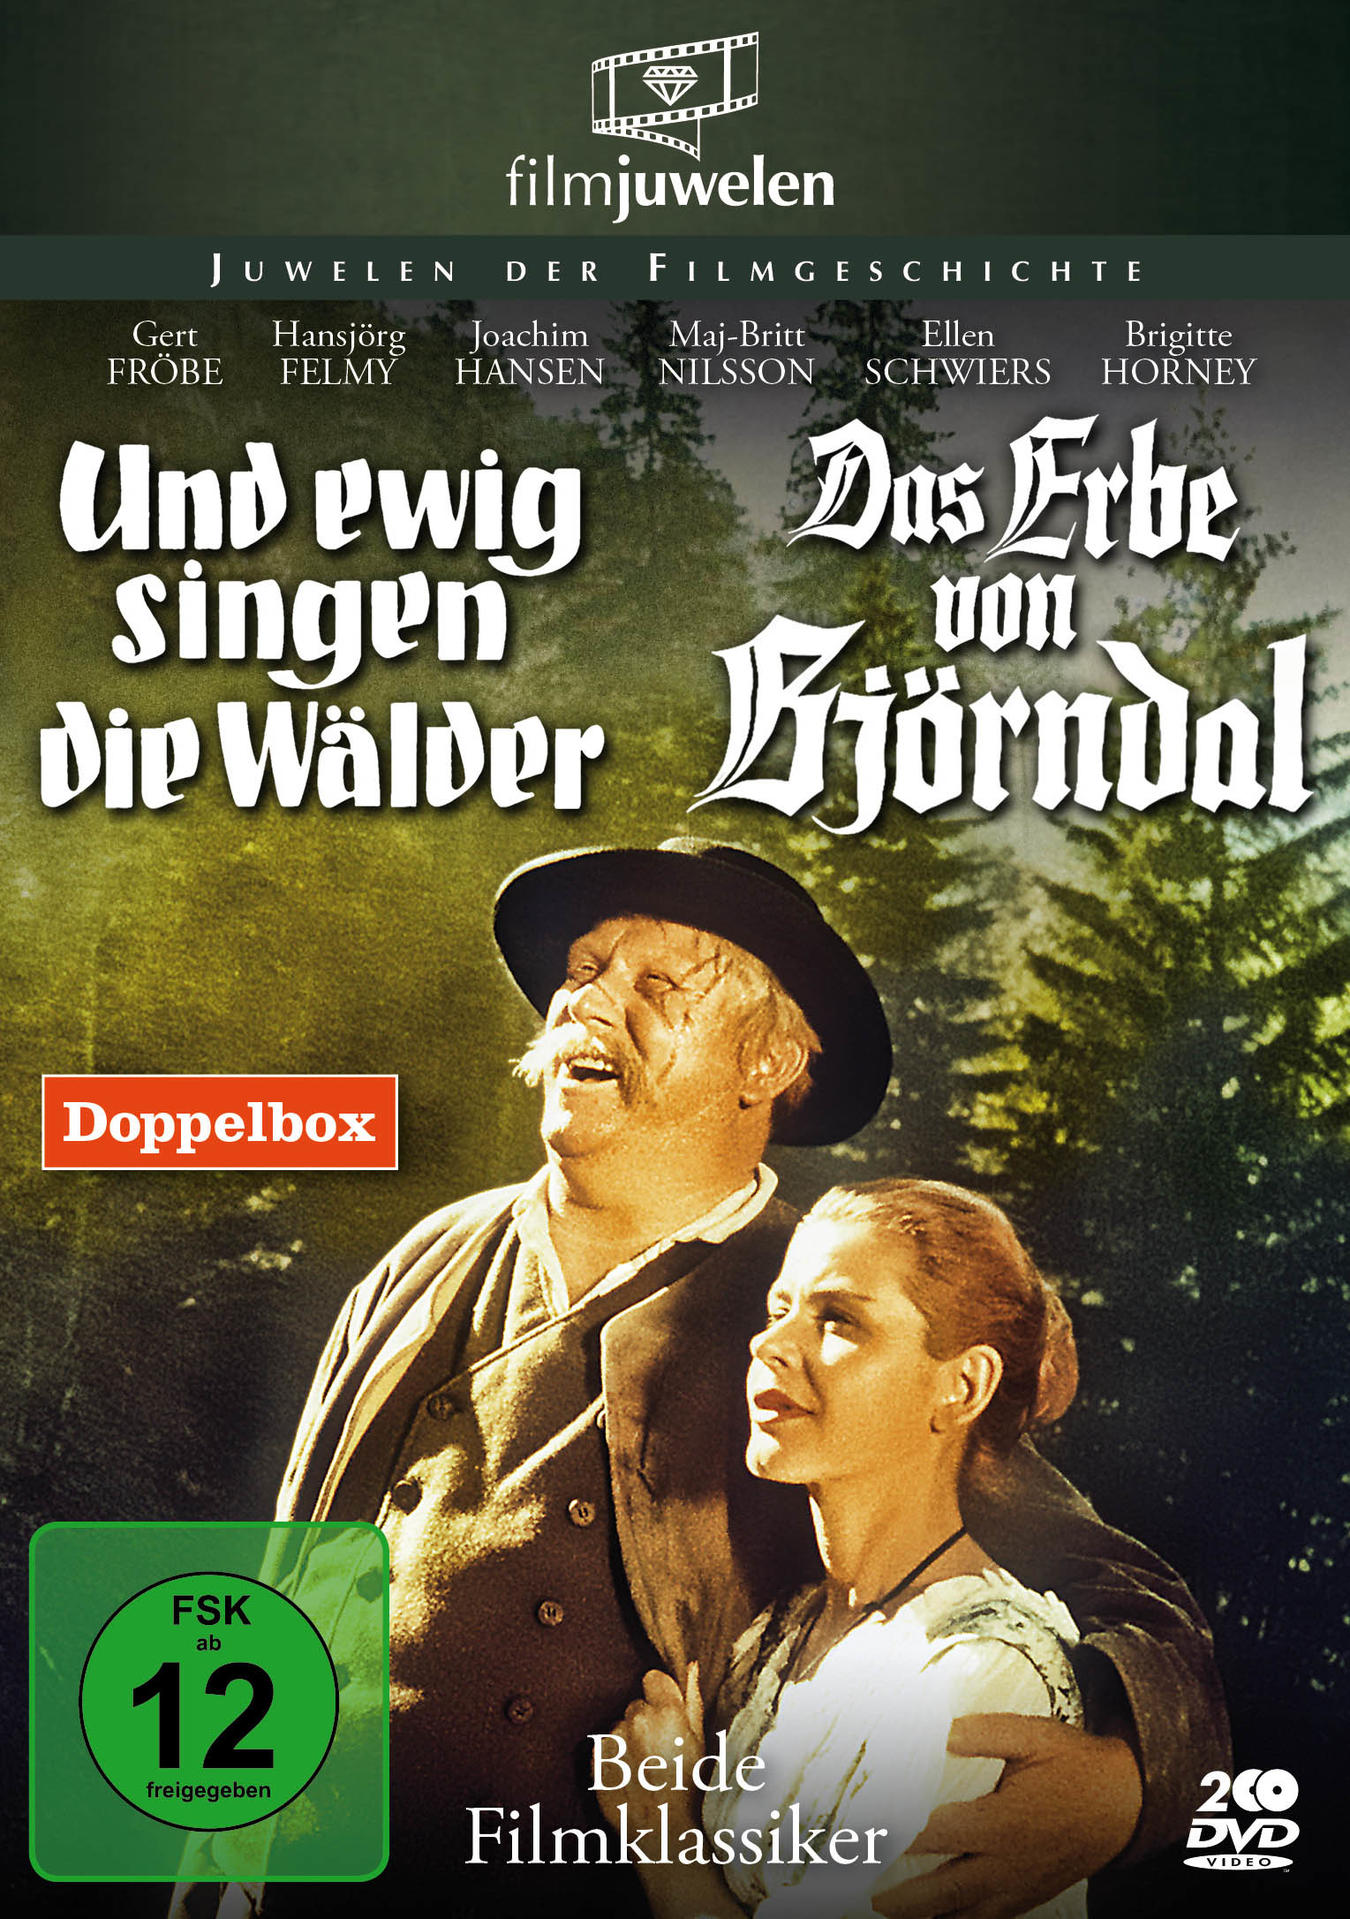 von Und Das DVD Erbe & ewig singen die Björndal Wälder